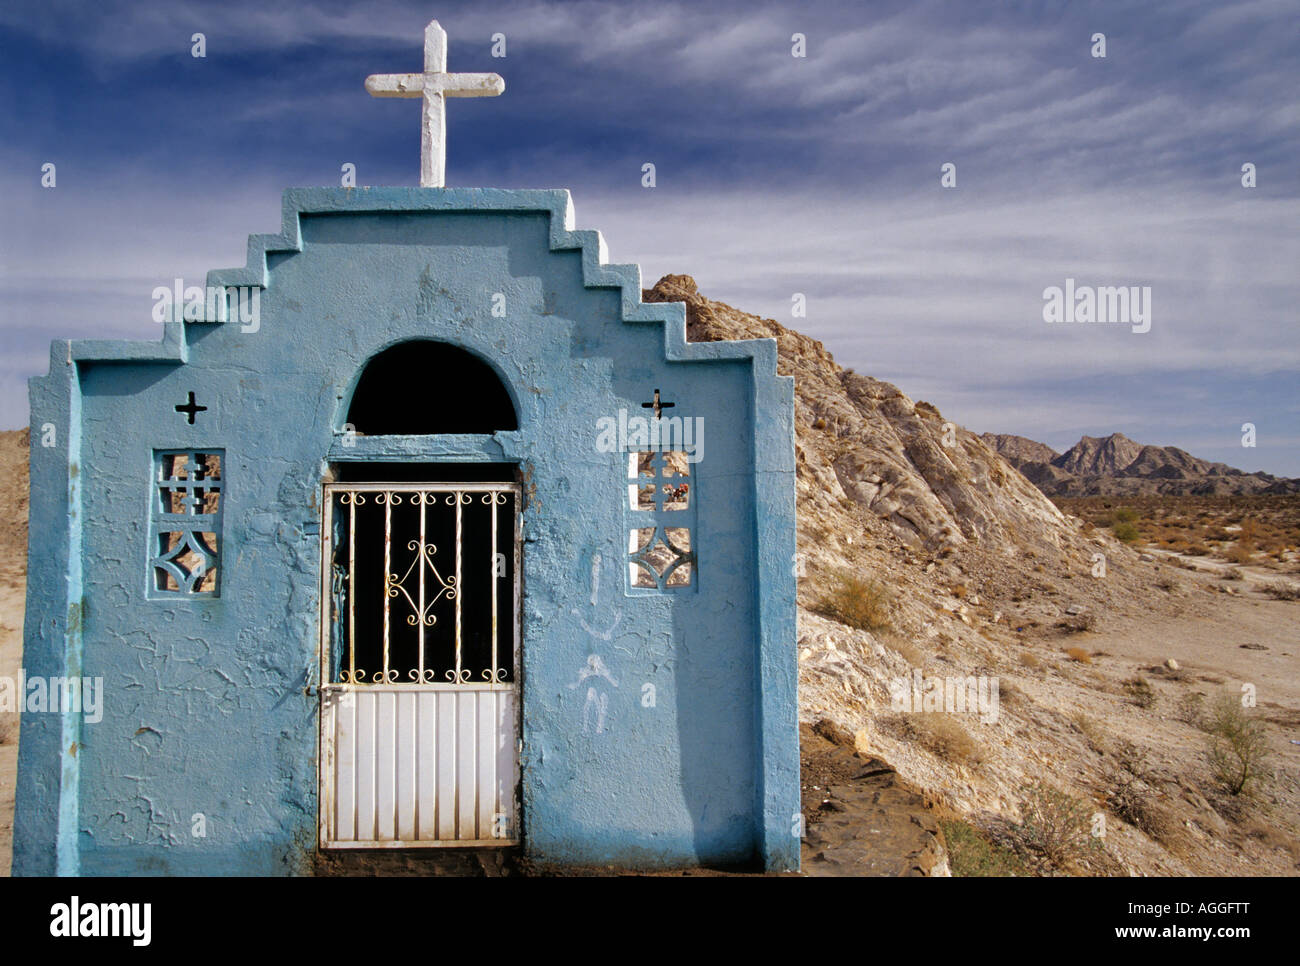 Roadside Shrine in Sonoran Desert, Mexico Stock Photo